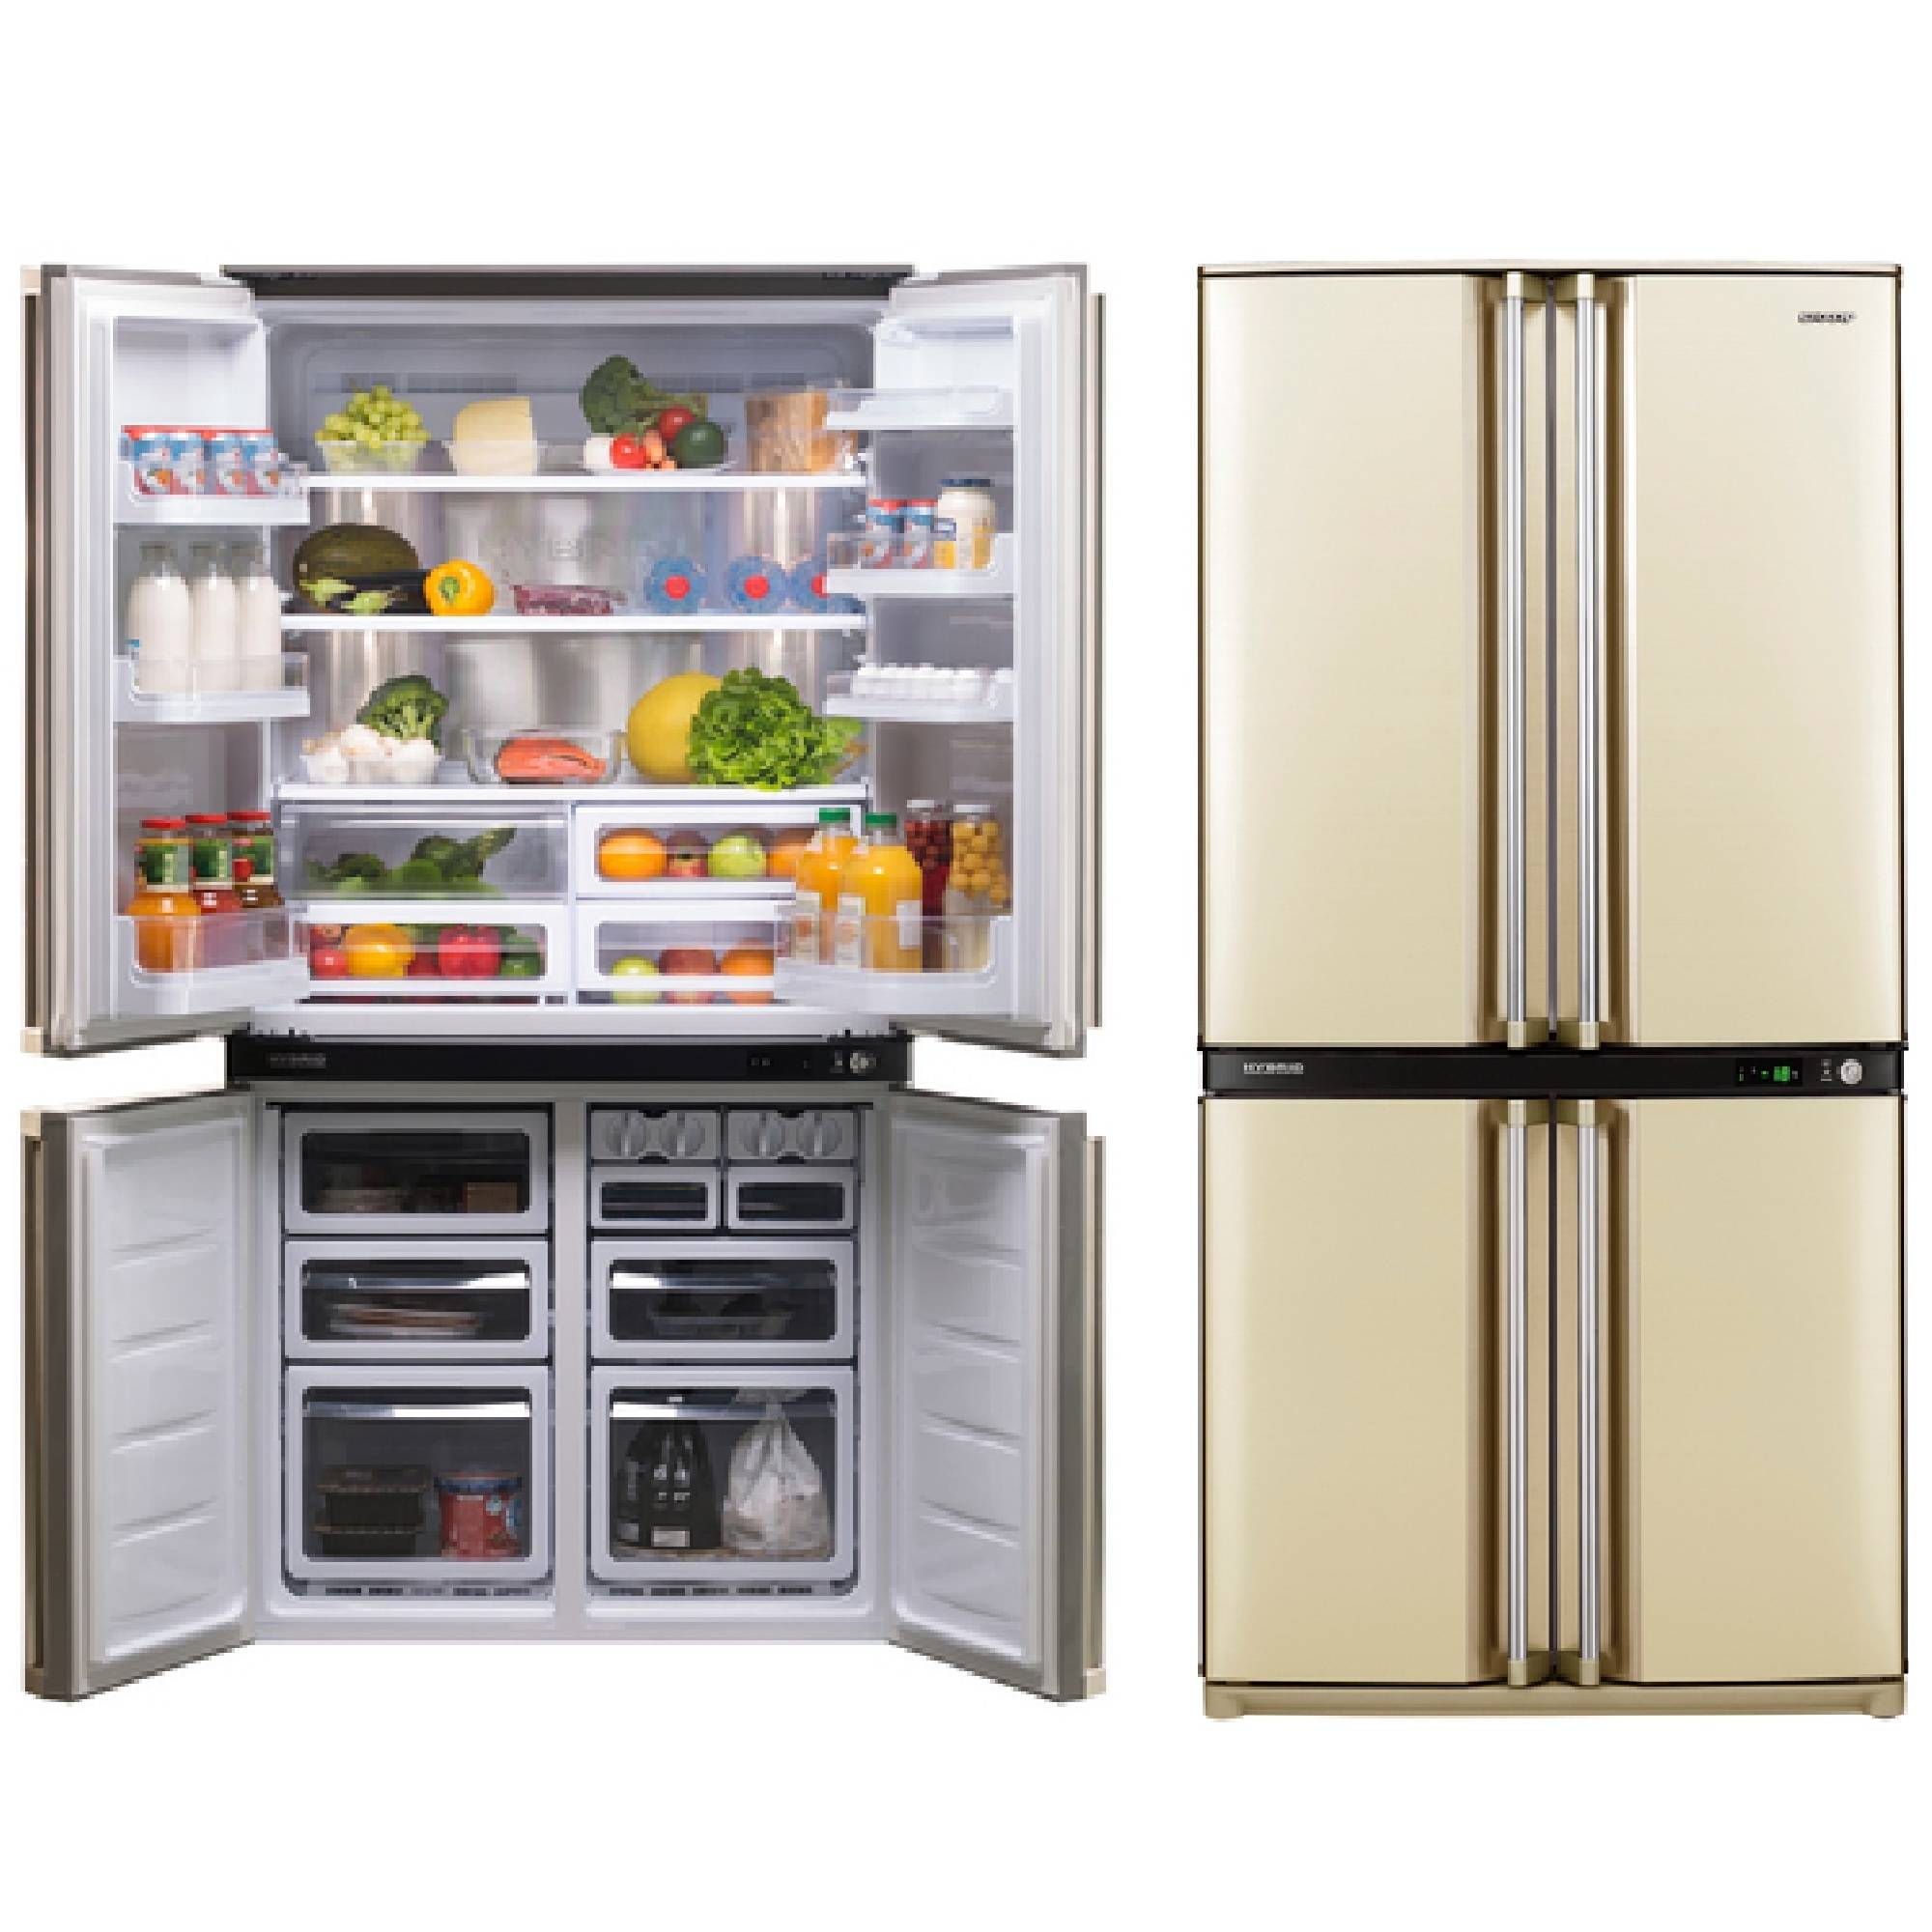 Холодильники sharp: отзывы, лучшие модели, плюсы и минусы - все об инженерных системах